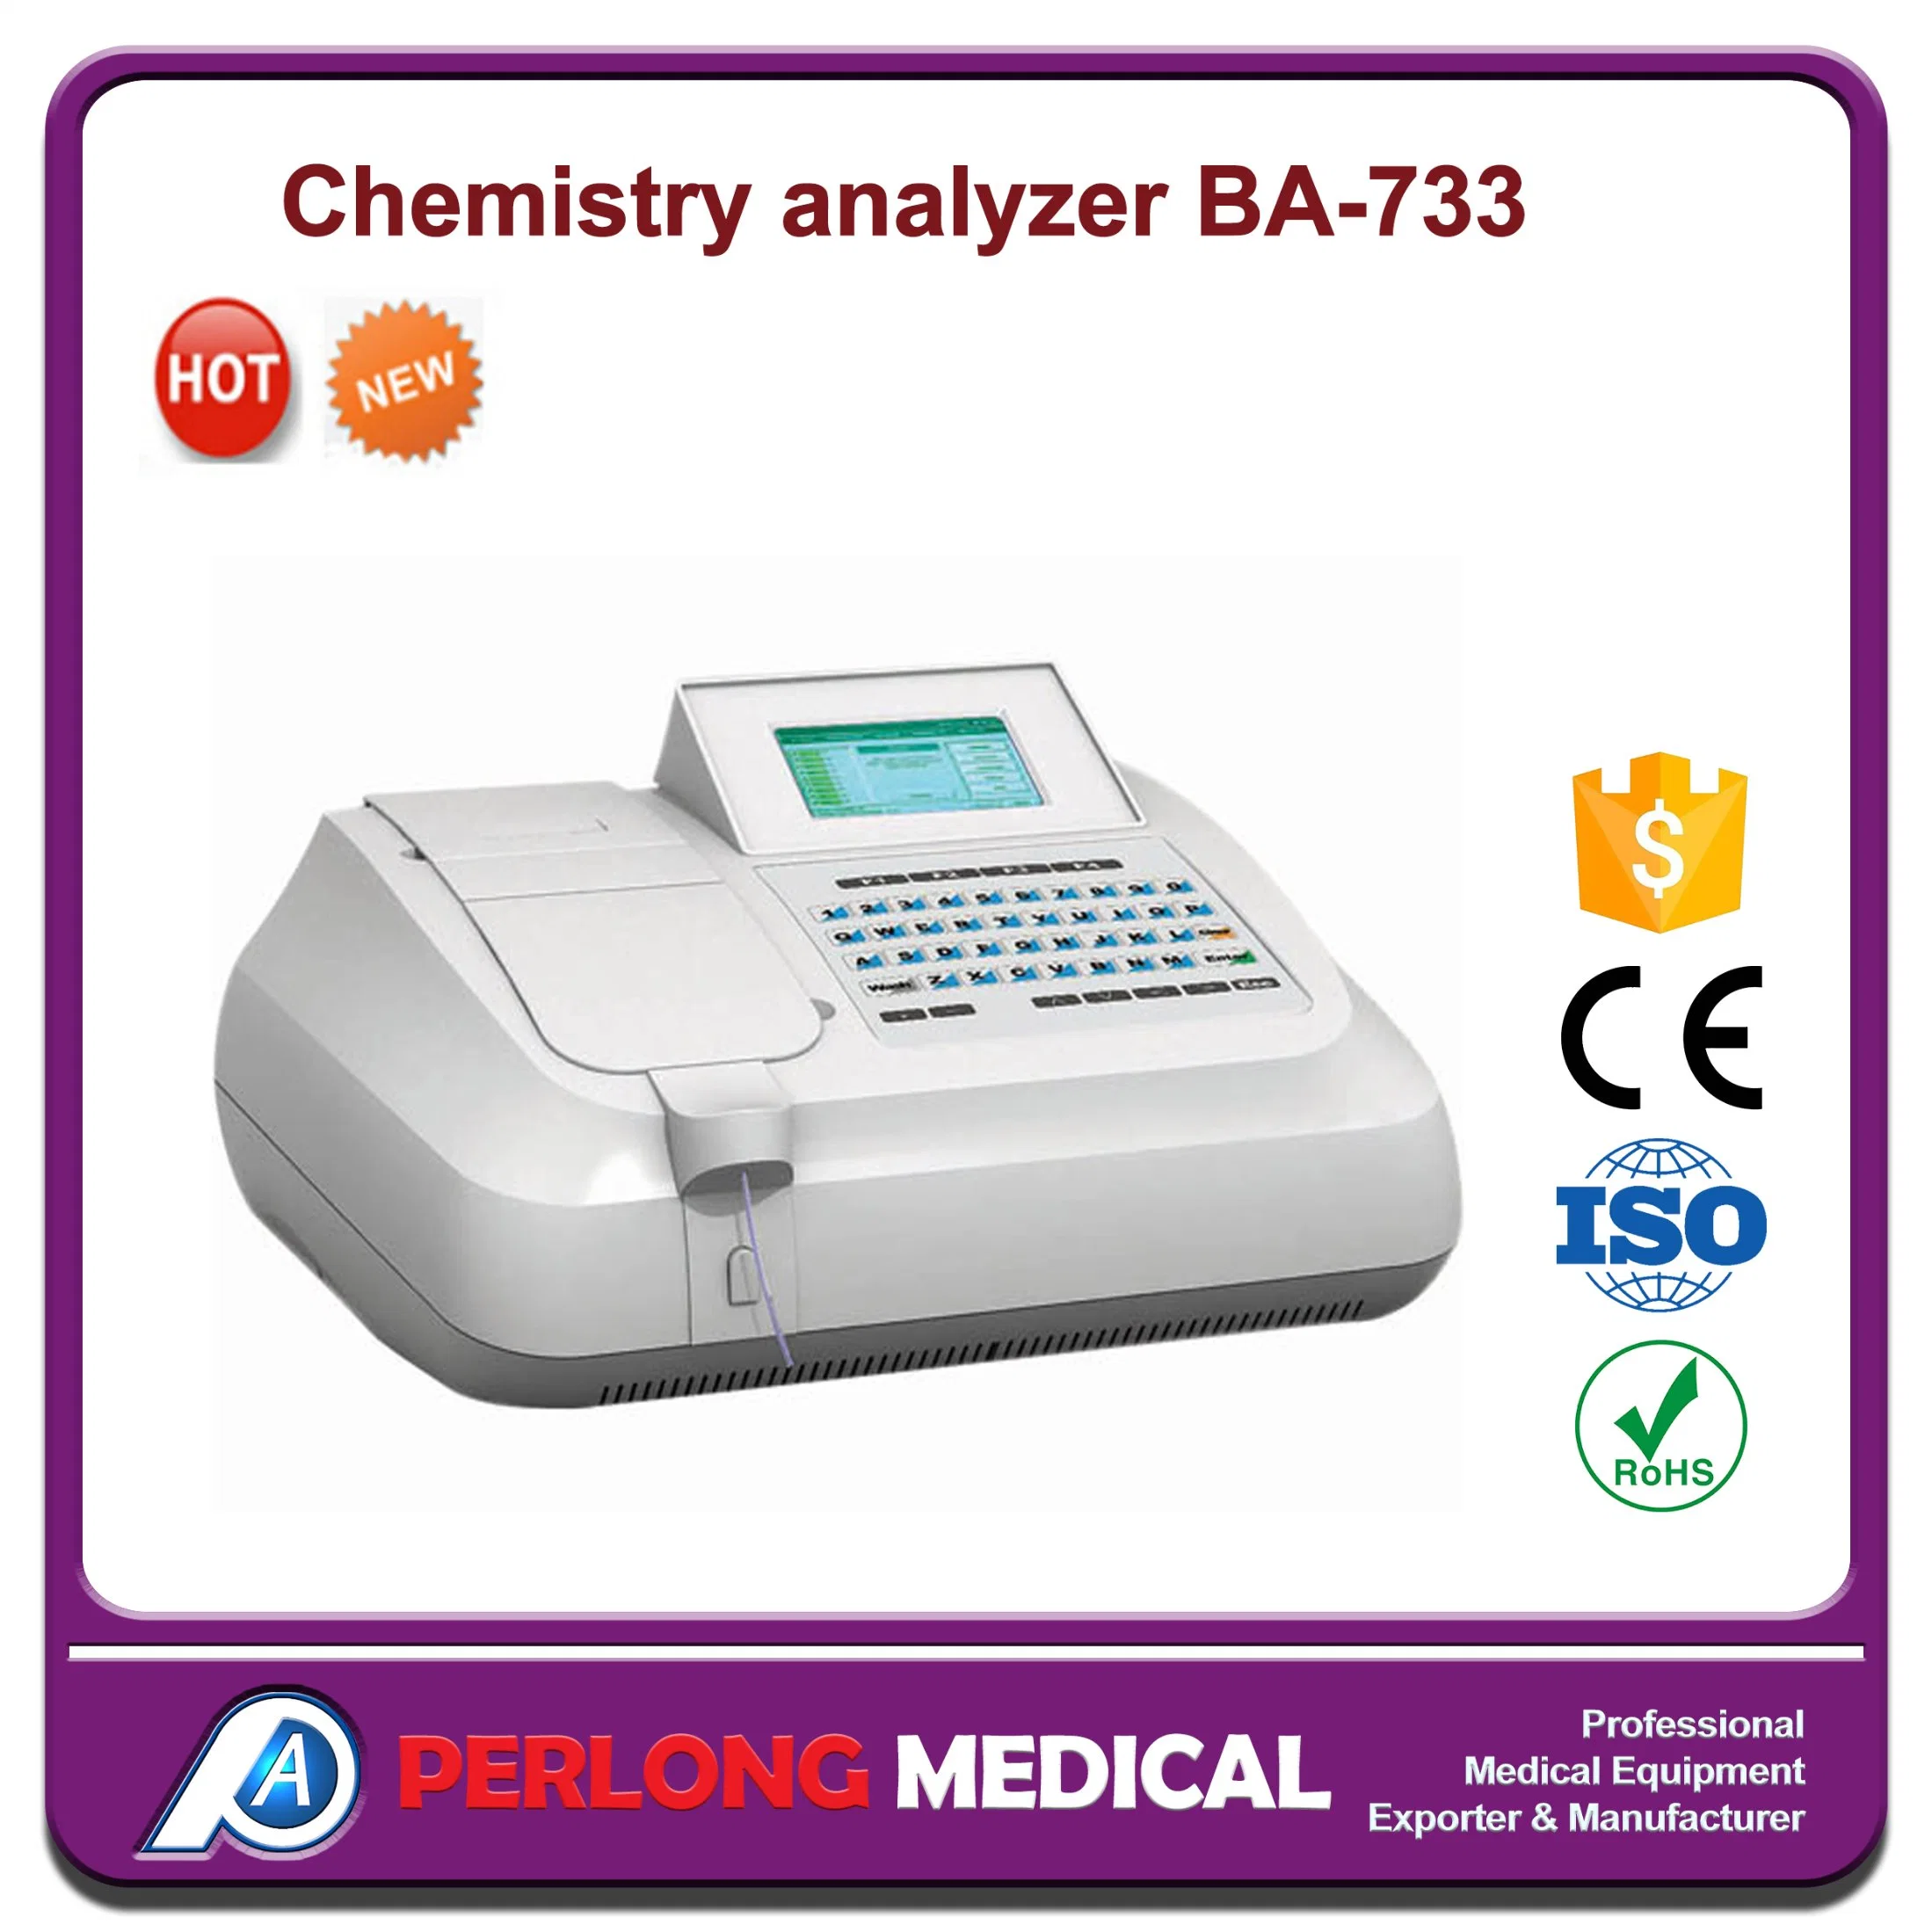 Ba-733 matériel de laboratoire de biochimie semi-automatique Analyzer/analyseur de chimie